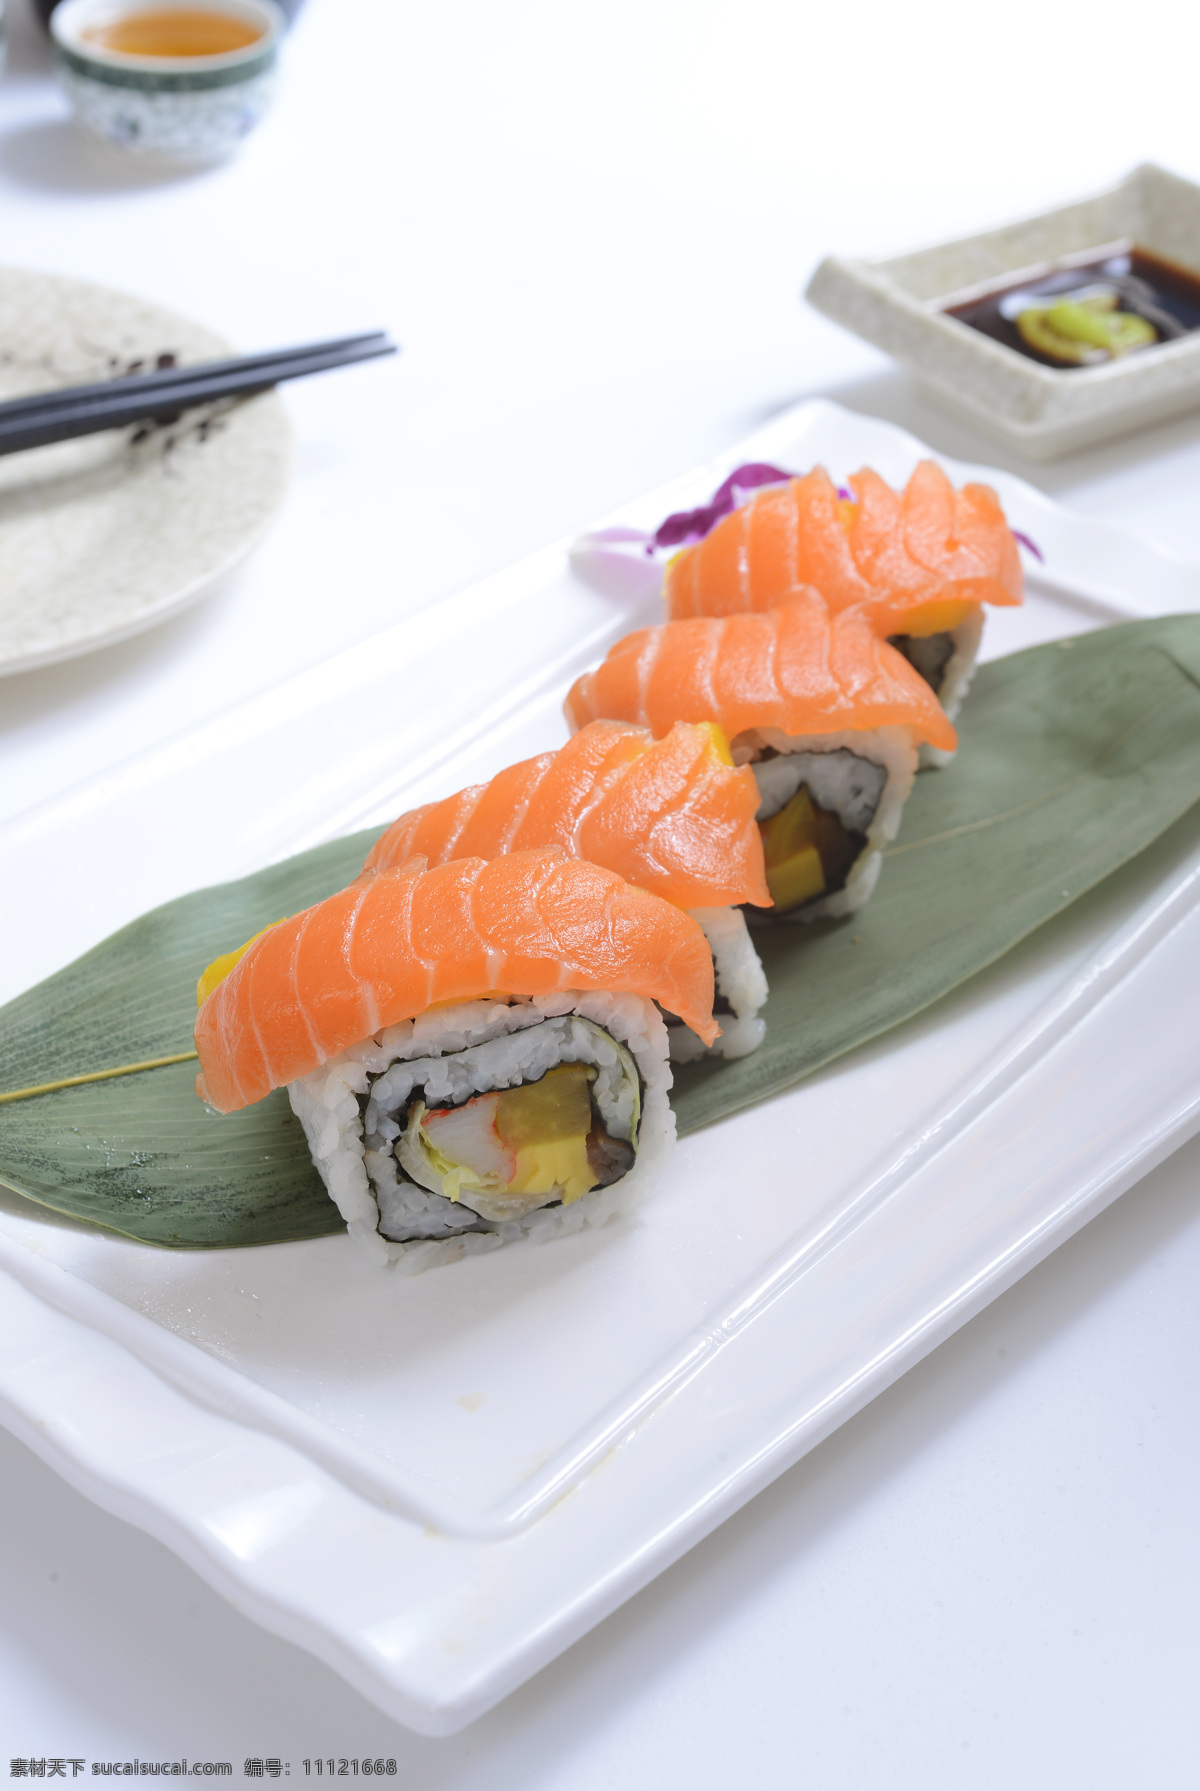 三文鱼卷 创意卷物 特色三文鱼 寿司 日式风味 餐饮美食